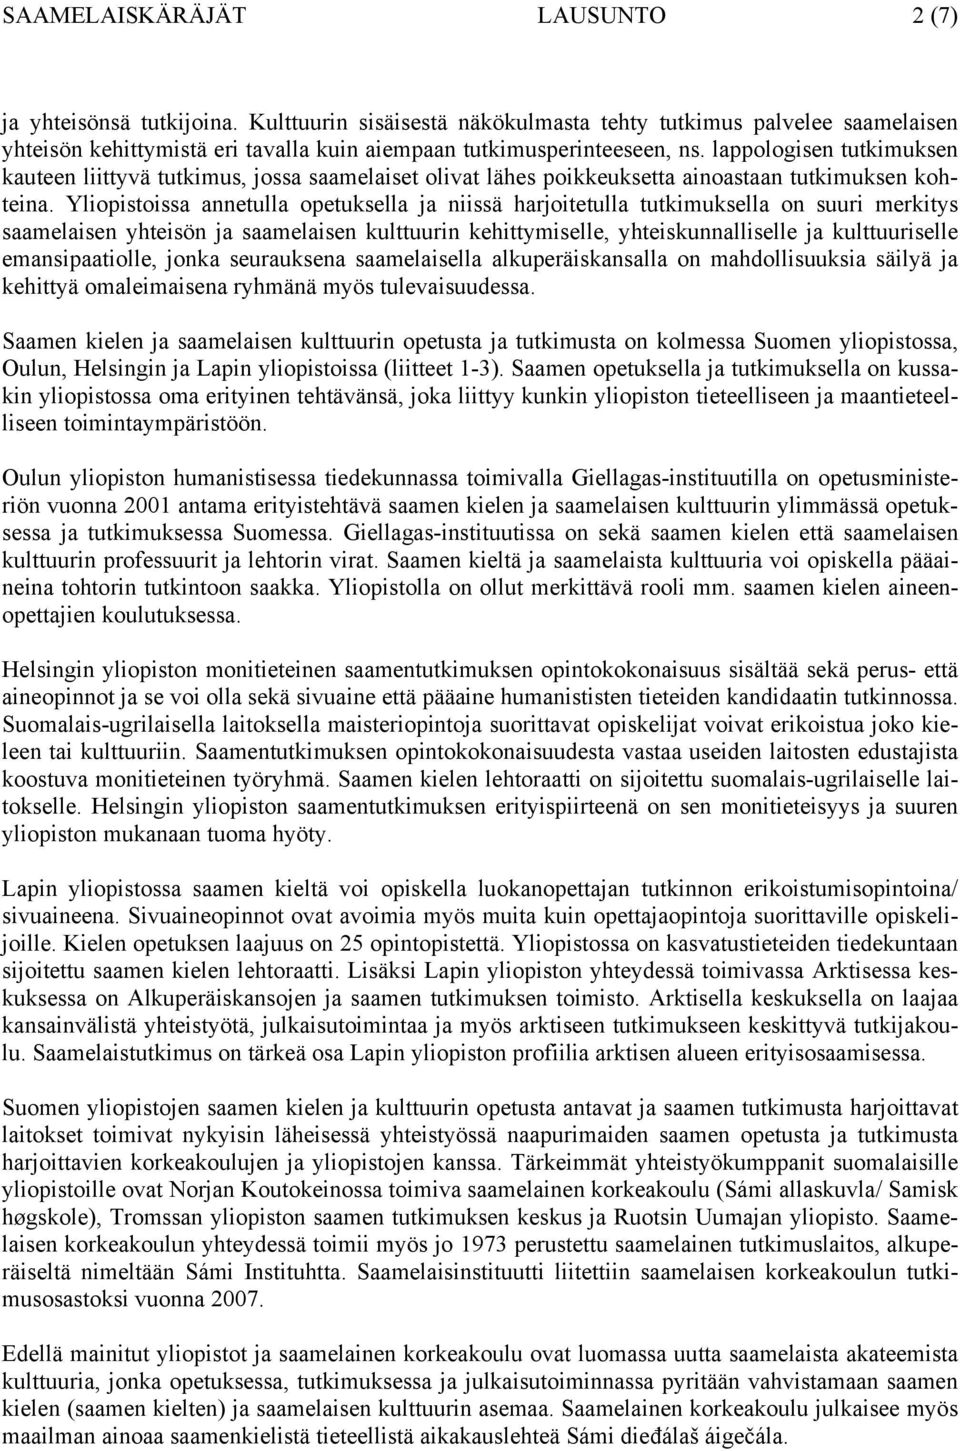 lappologisen tutkimuksen kauteen liittyvä tutkimus, jossa saamelaiset olivat lähes poikkeuksetta ainoastaan tutkimuksen kohteina.